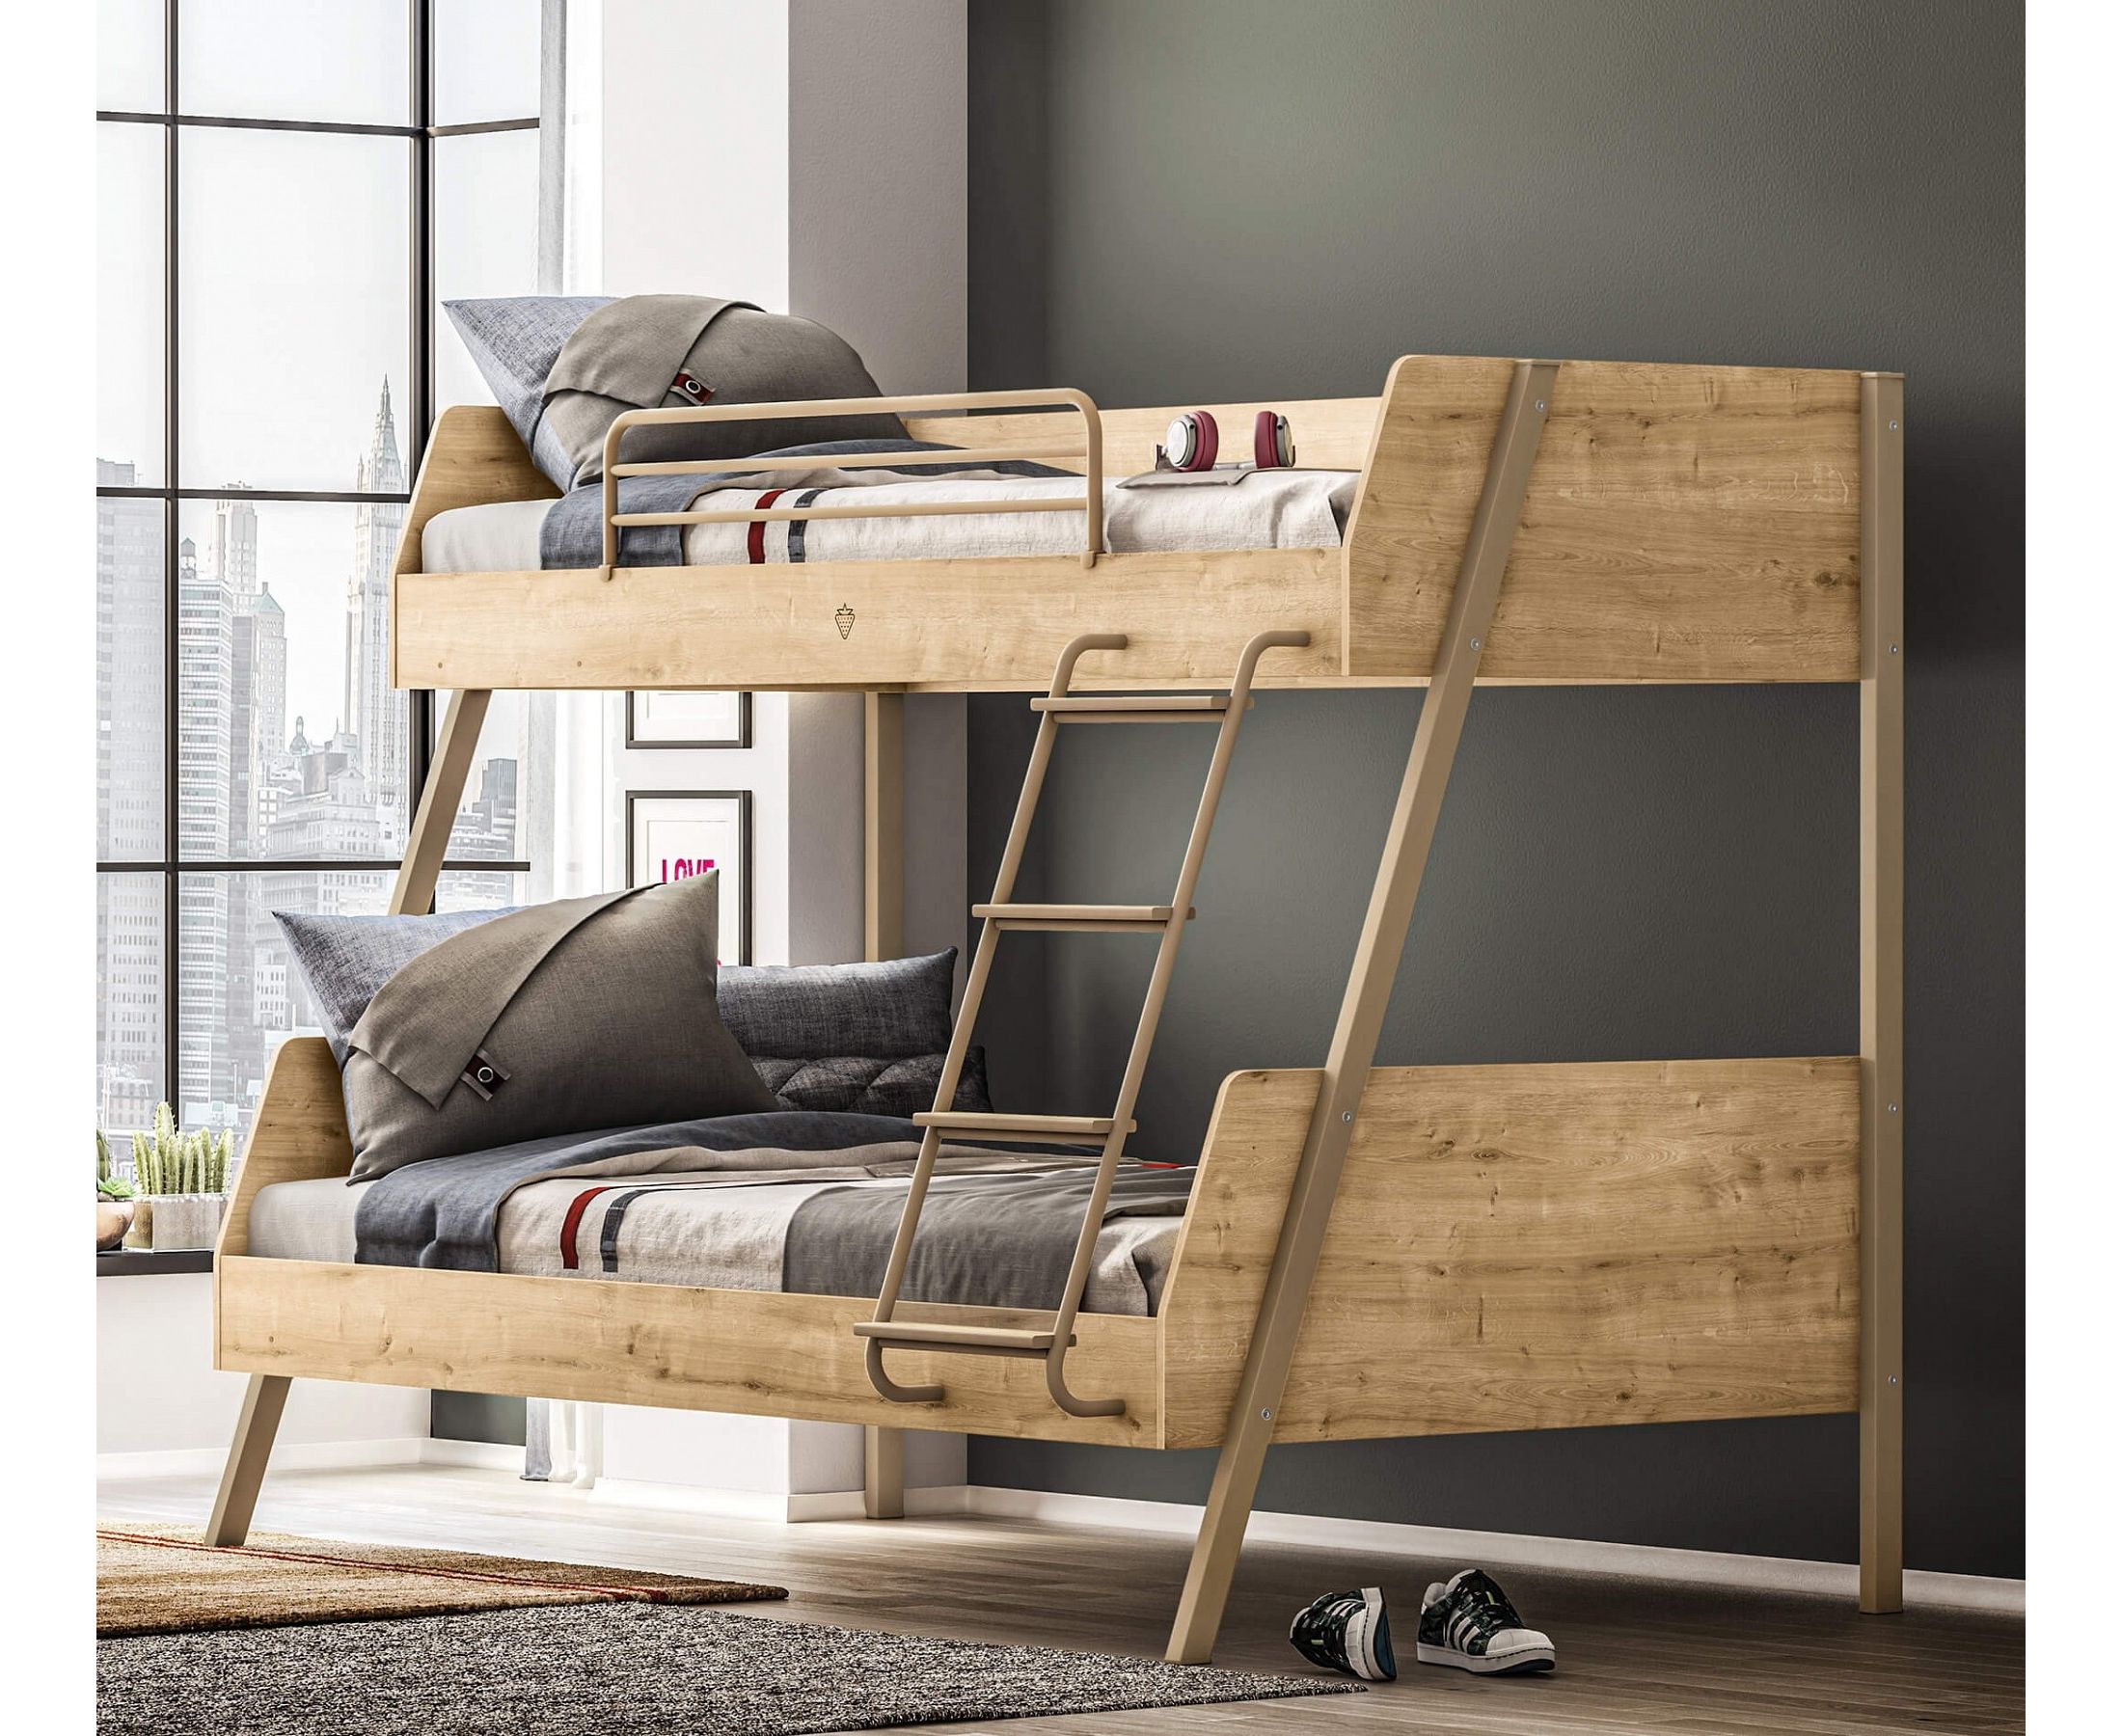 двухъярусная кровать для взрослых из дерева